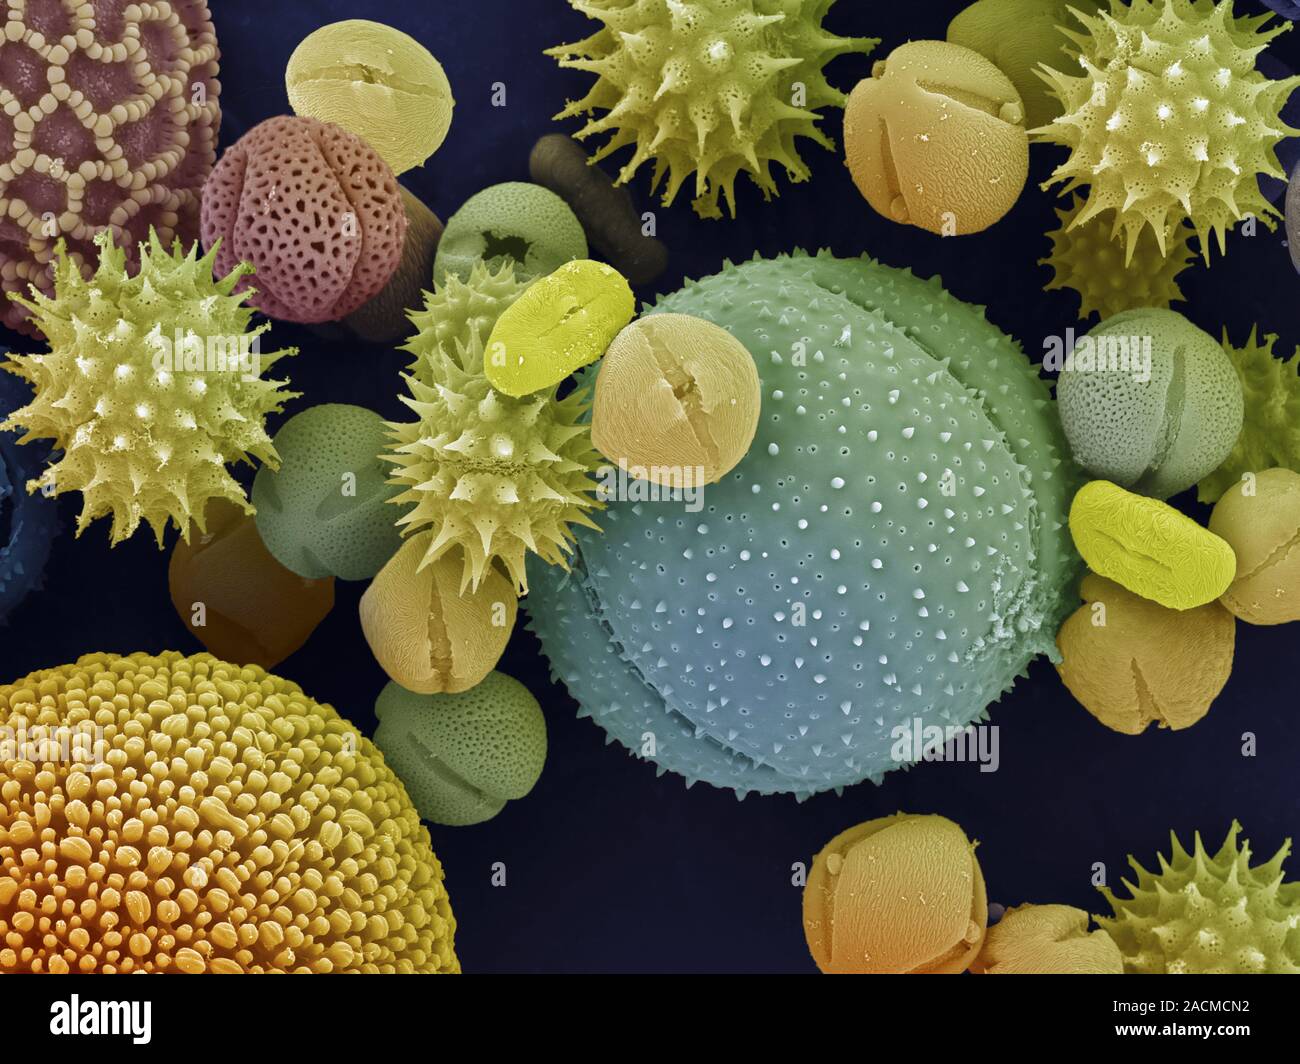 Пыльца форум. Пыльцевые зерна под микроскопом. Пыльца цветковых растений под микроскопом. Пыльца покрытосеменных под микроскопом. Пыльца микроскопия палинология.